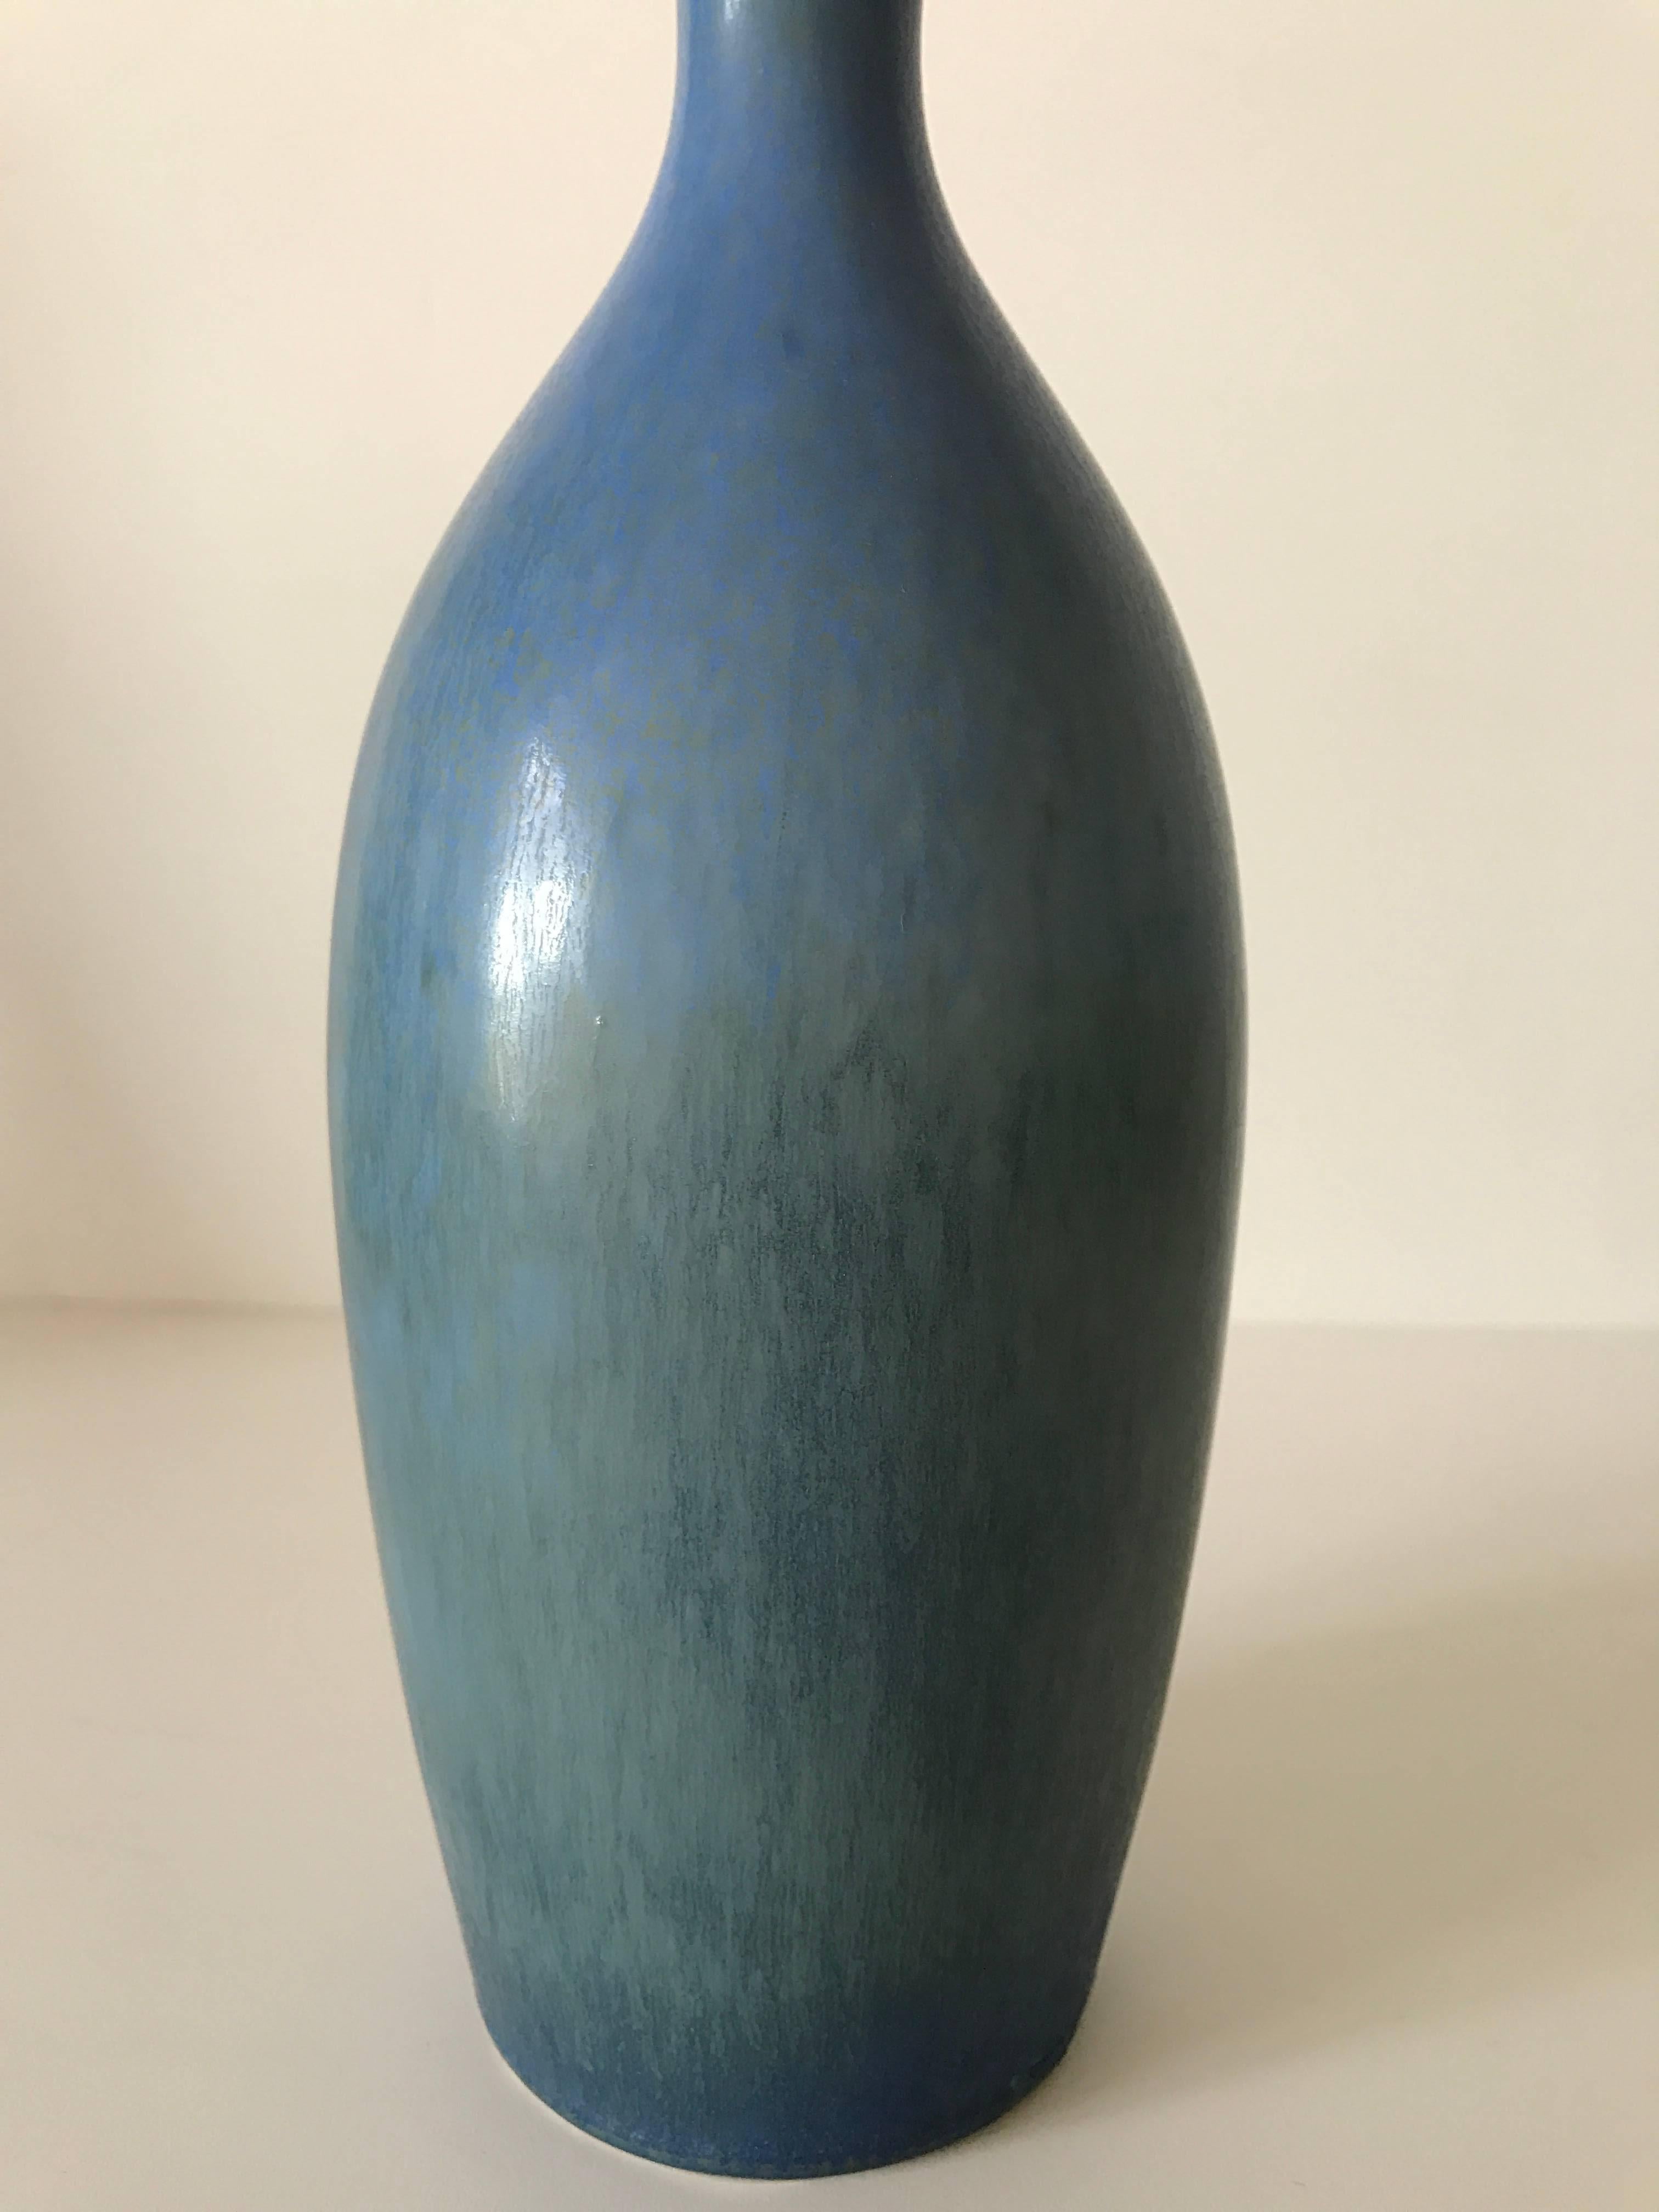 Scandinavian Modern 1984 Gustavsberg Blue Hare's Fur Vase Made by Sven Wejsfelt